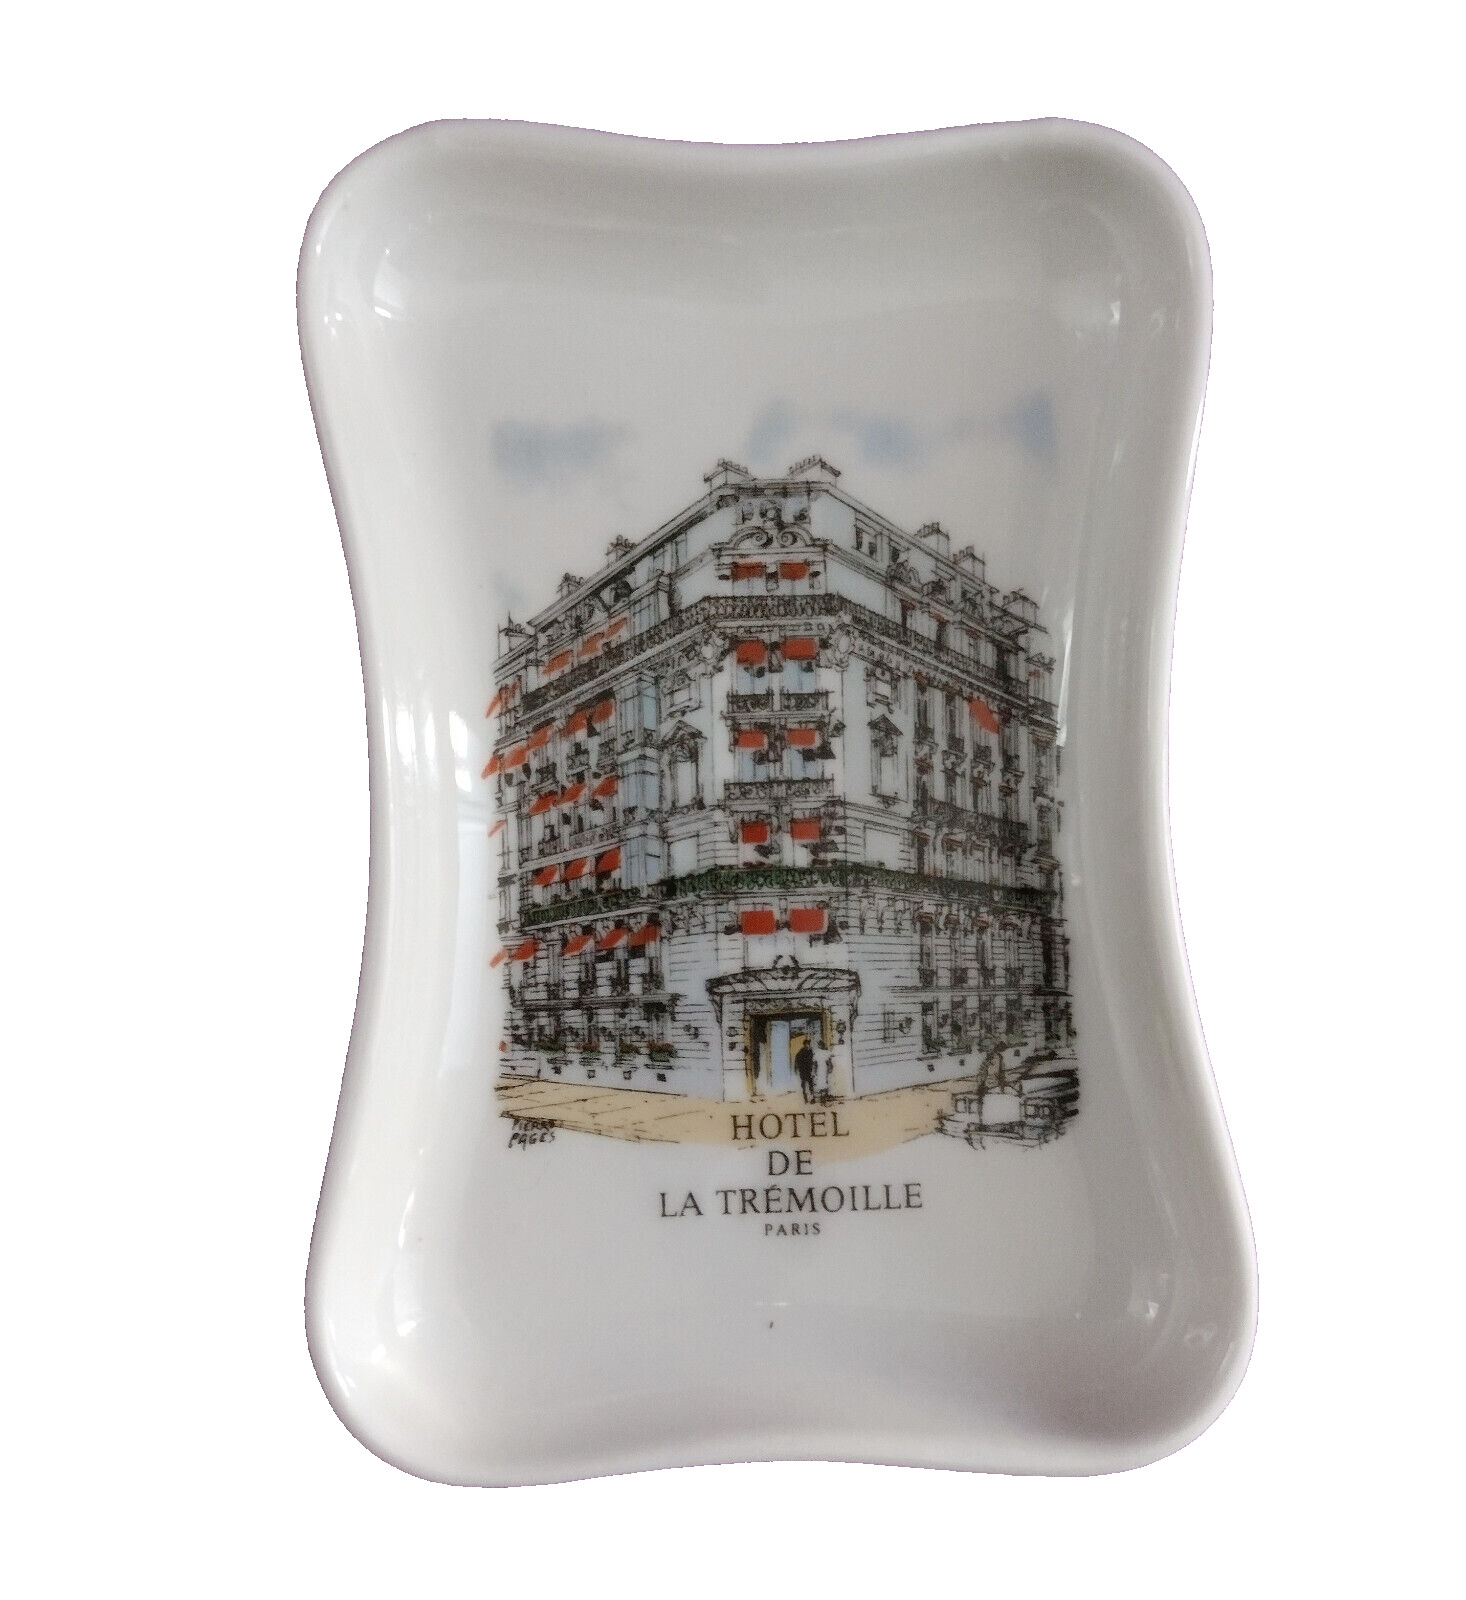 Vintage Pillivuyt Hotel de la Tremoille Paris France Trinket Soap Dish Ashtray